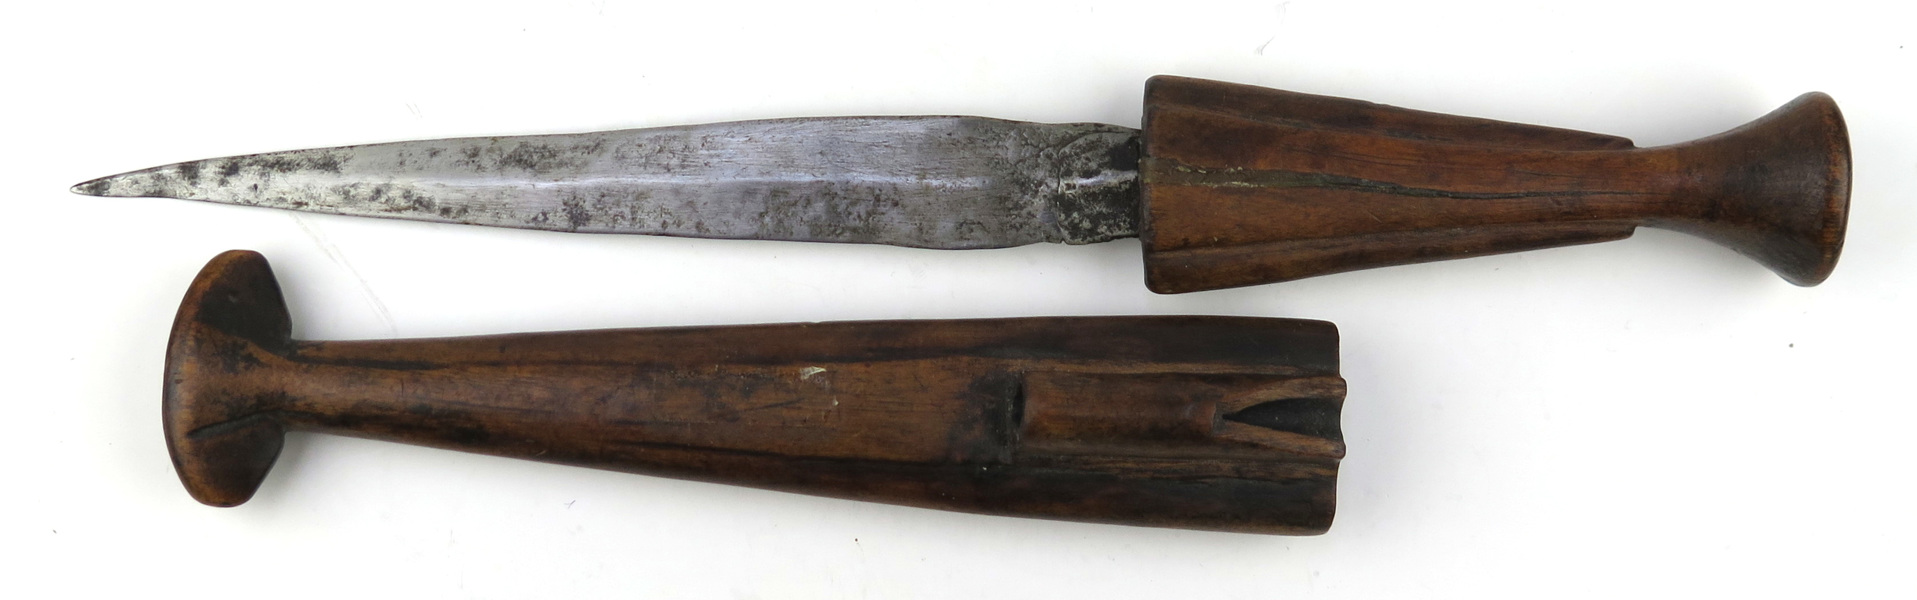 Kniv i balja, hardwood och smide, antagligen Shona, Zimbabwe, 1900-talets 1 hälft, _13834a_lg.jpeg